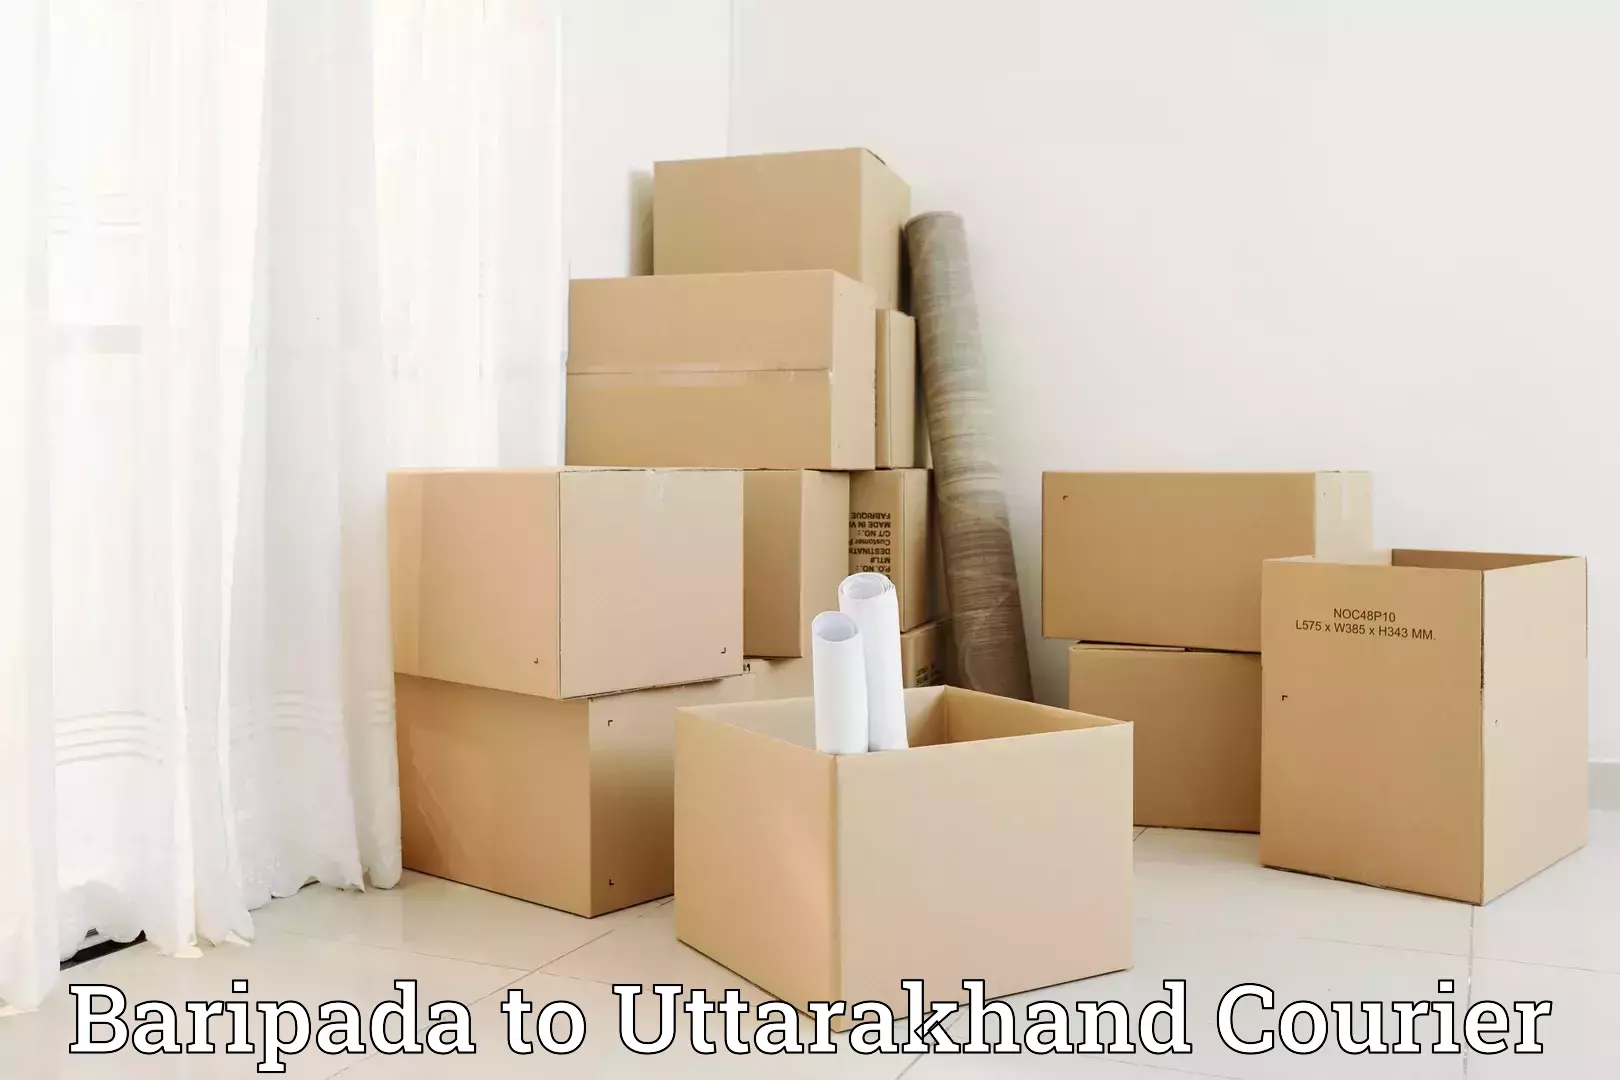 Moving and handling services Baripada to Rudraprayag